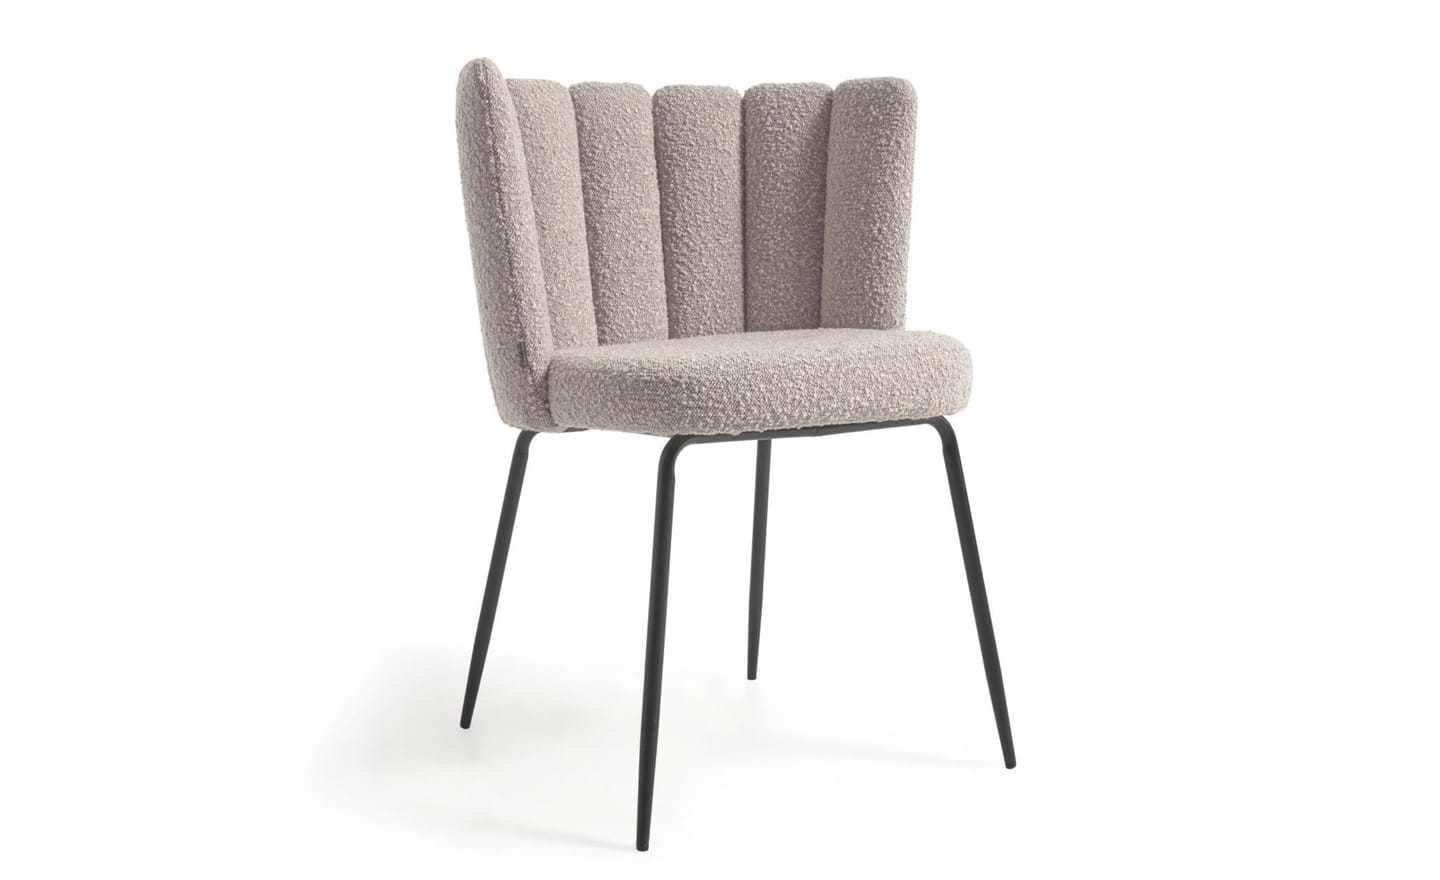 Cadeira Aniela Cinza Claro, estofada com tecido de efeito borrego cinza claro. Design envolvente para espaços de refeição elegantes.